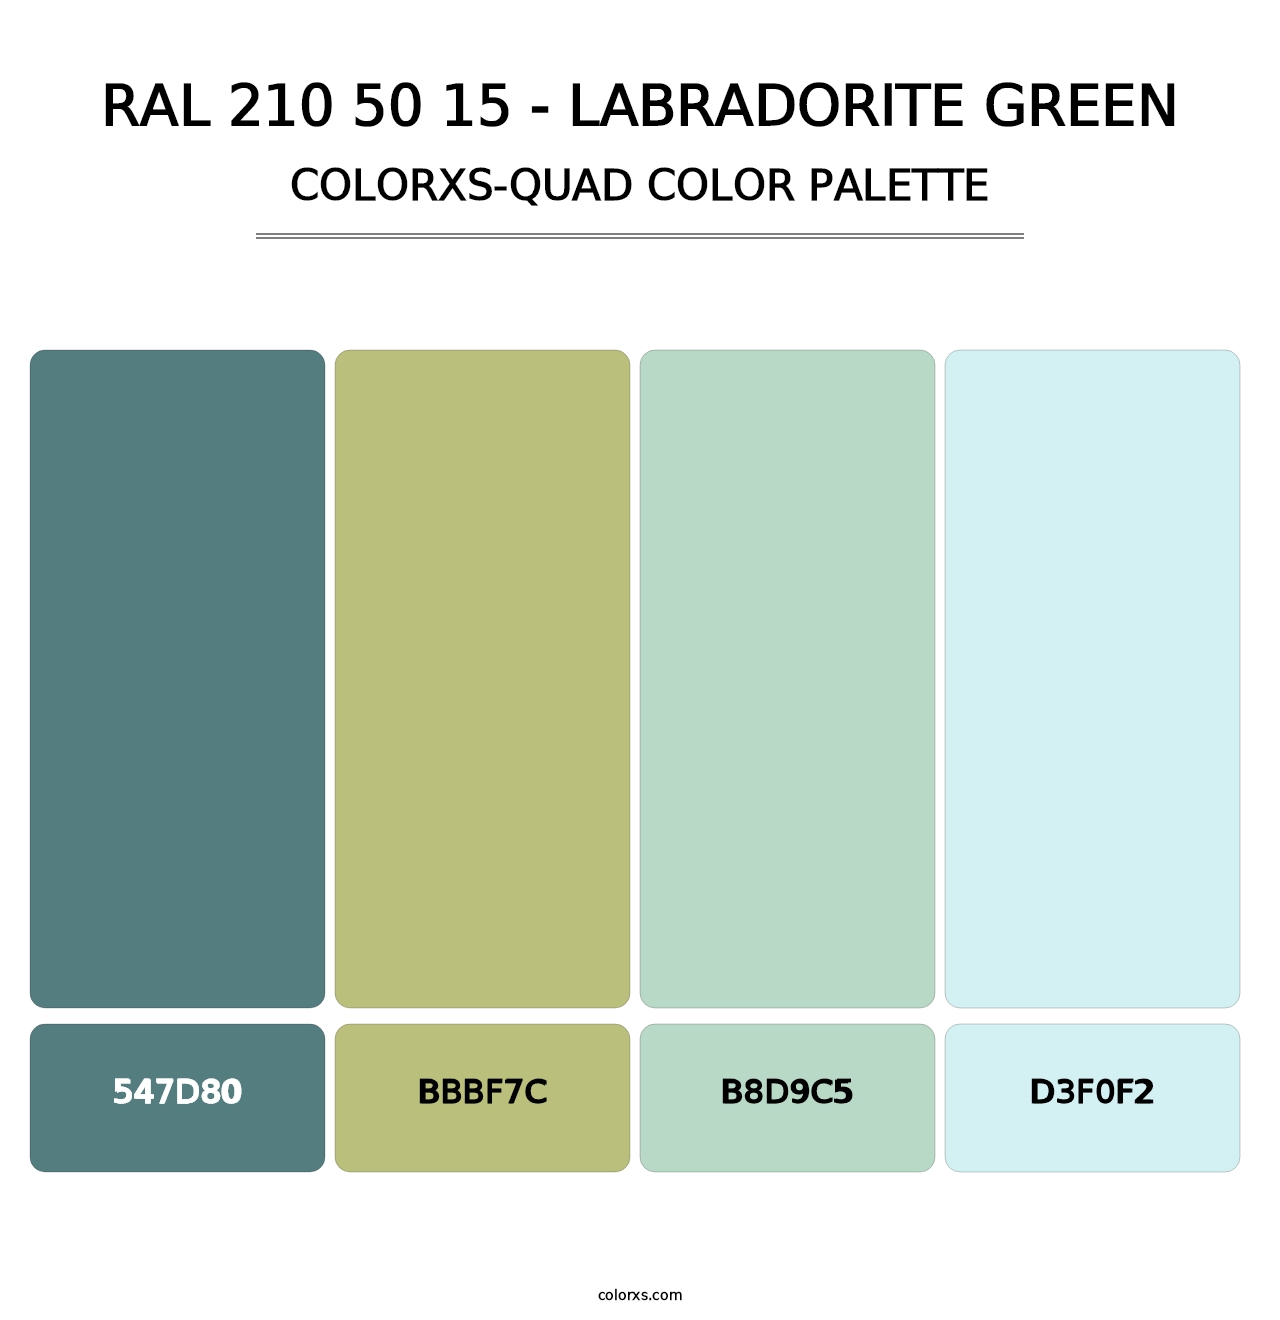 RAL 210 50 15 - Labradorite Green - Colorxs Quad Palette